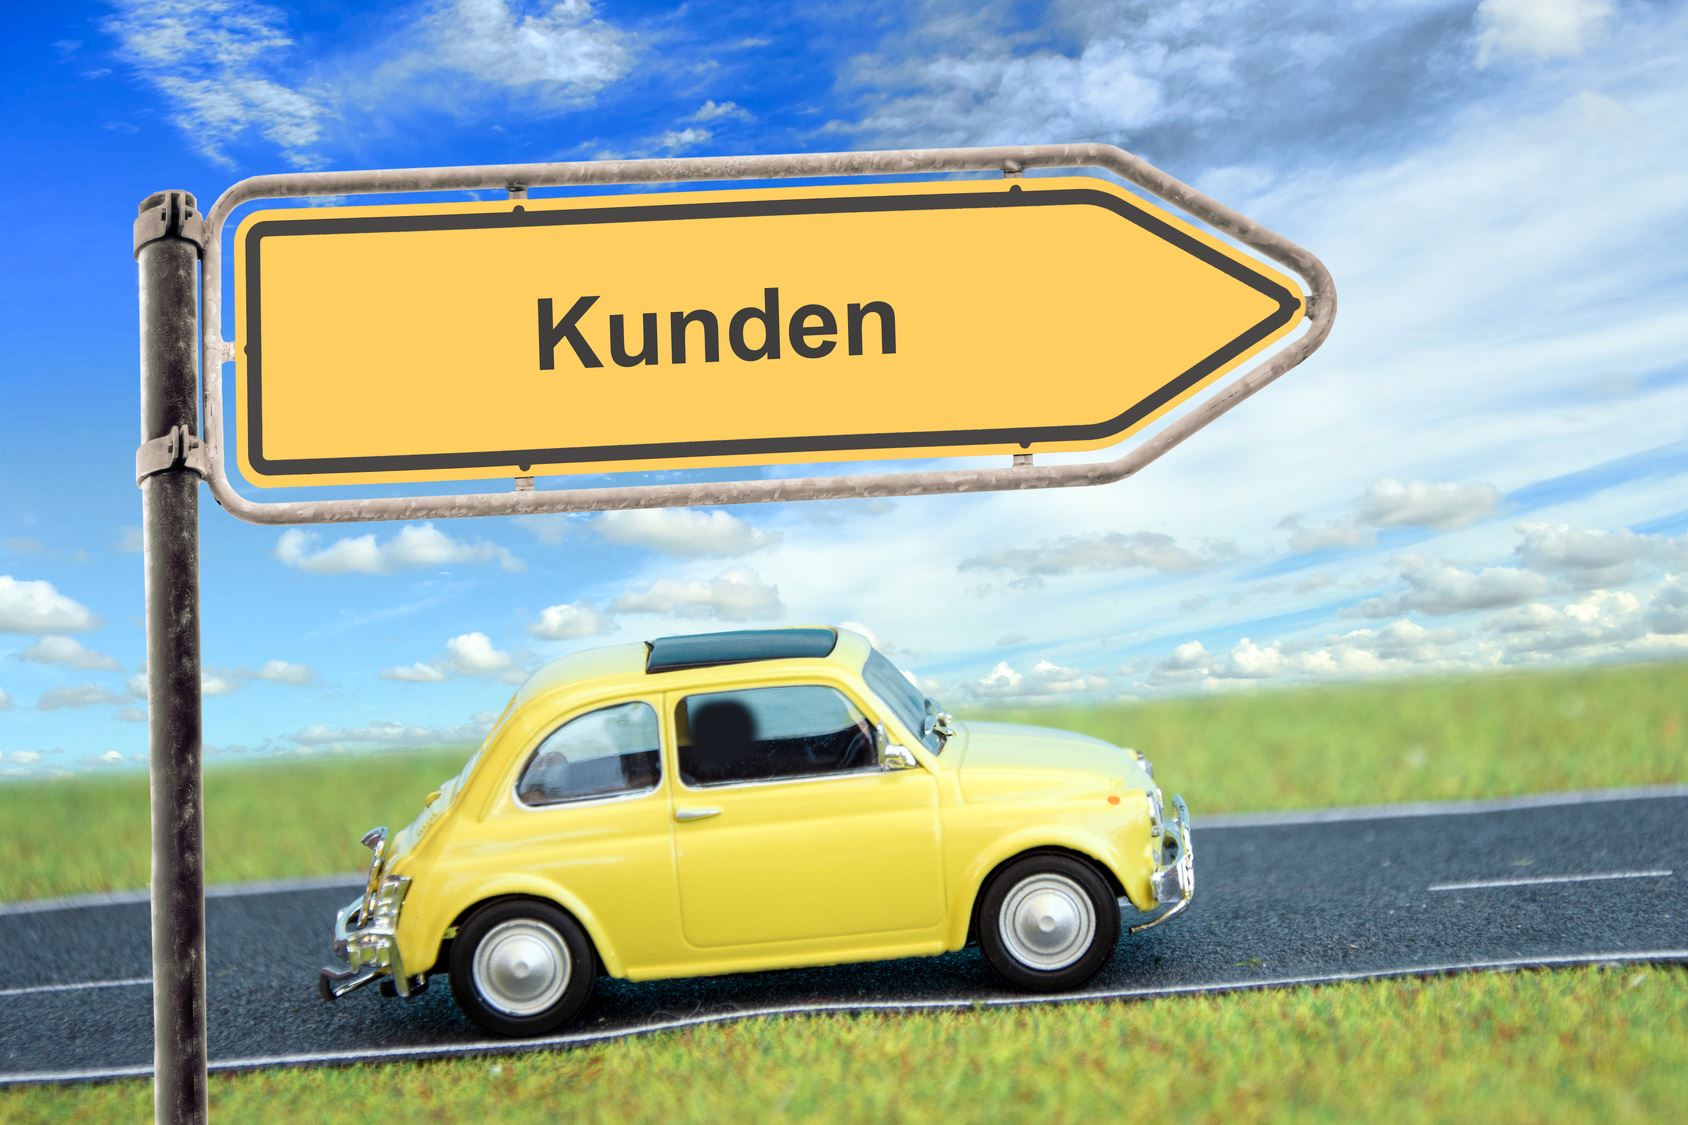 Gelber VW Käfer fährt in Richtung der Kunden